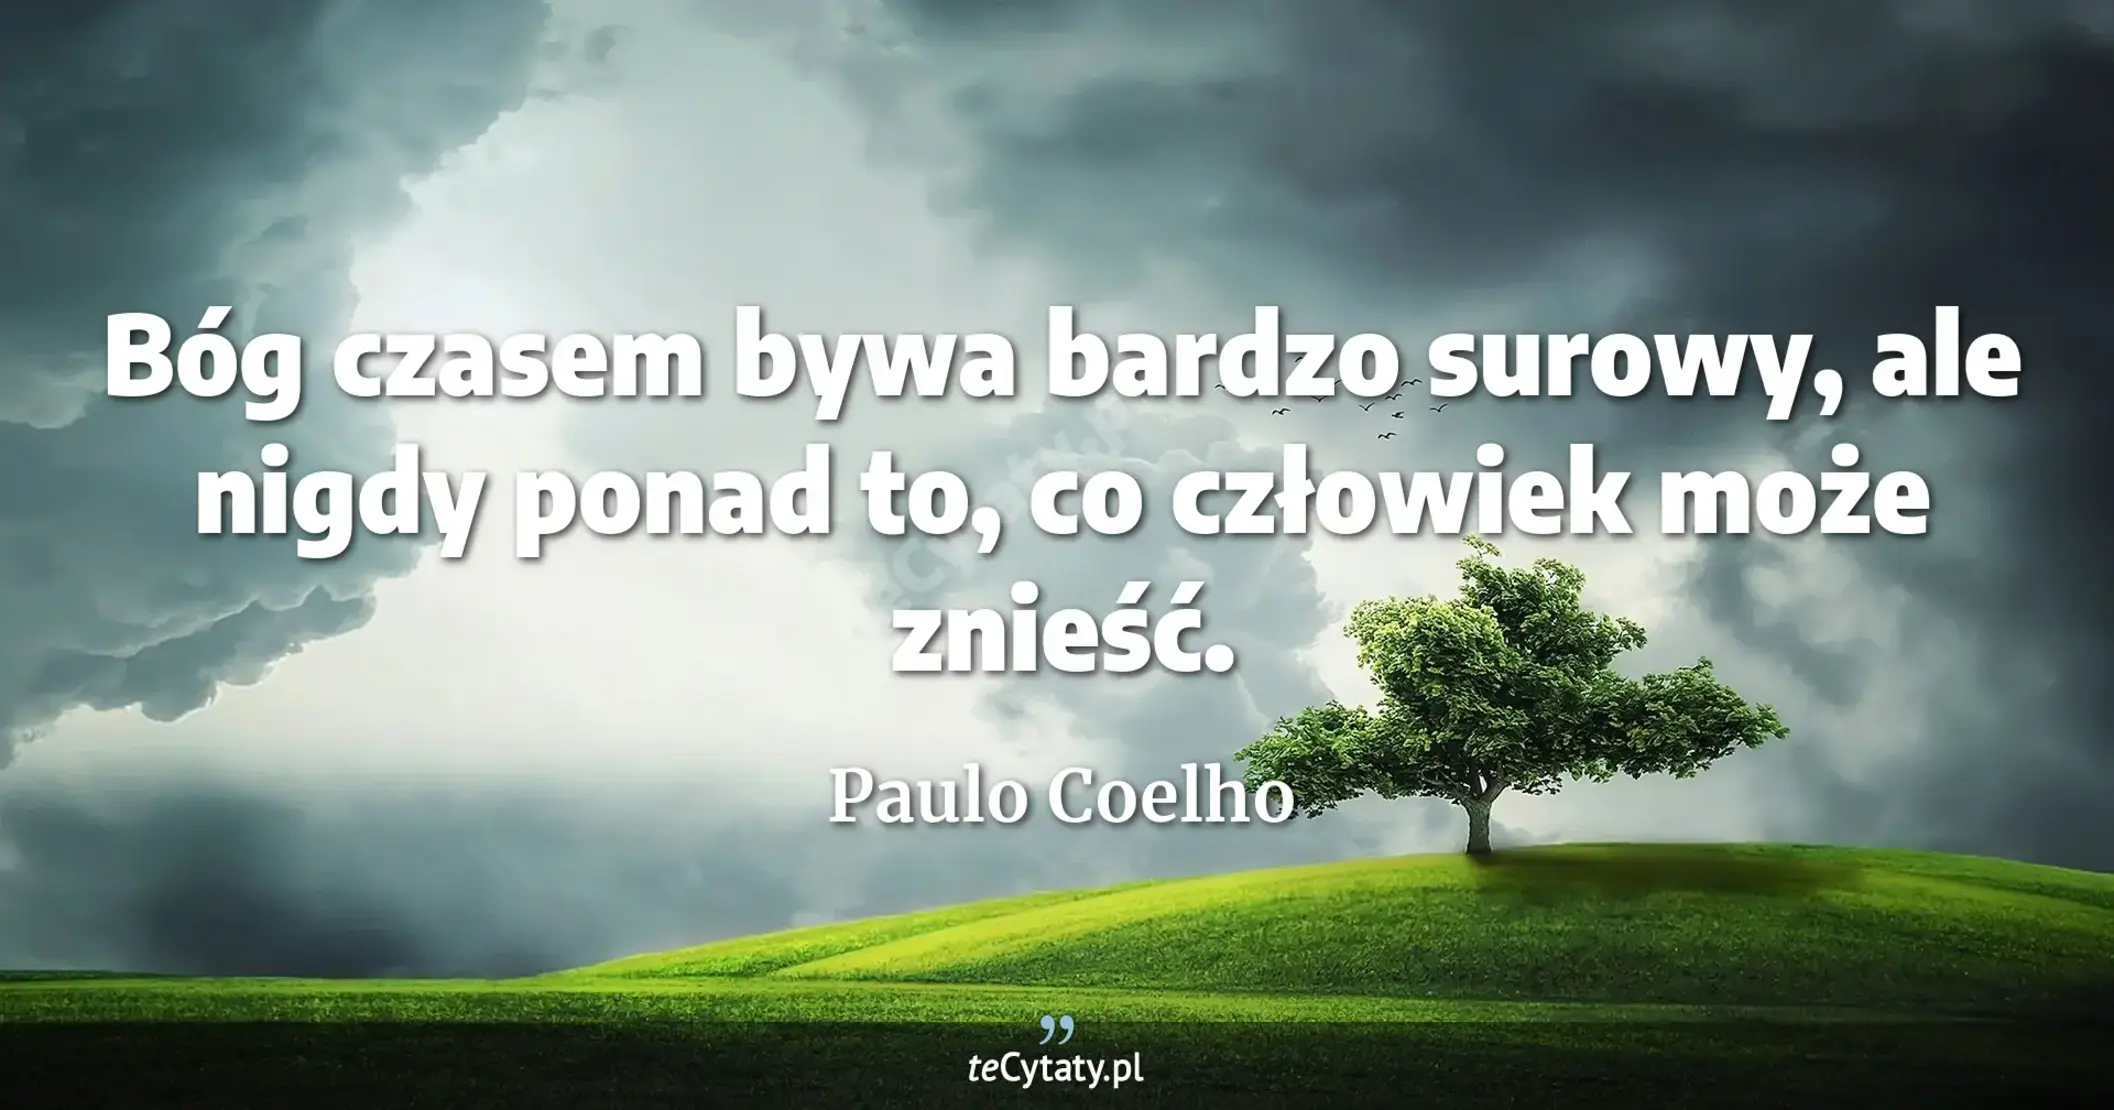 Bóg czasem bywa bardzo surowy, ale nigdy ponad to, co człowiek może znieść. - Paulo Coelho